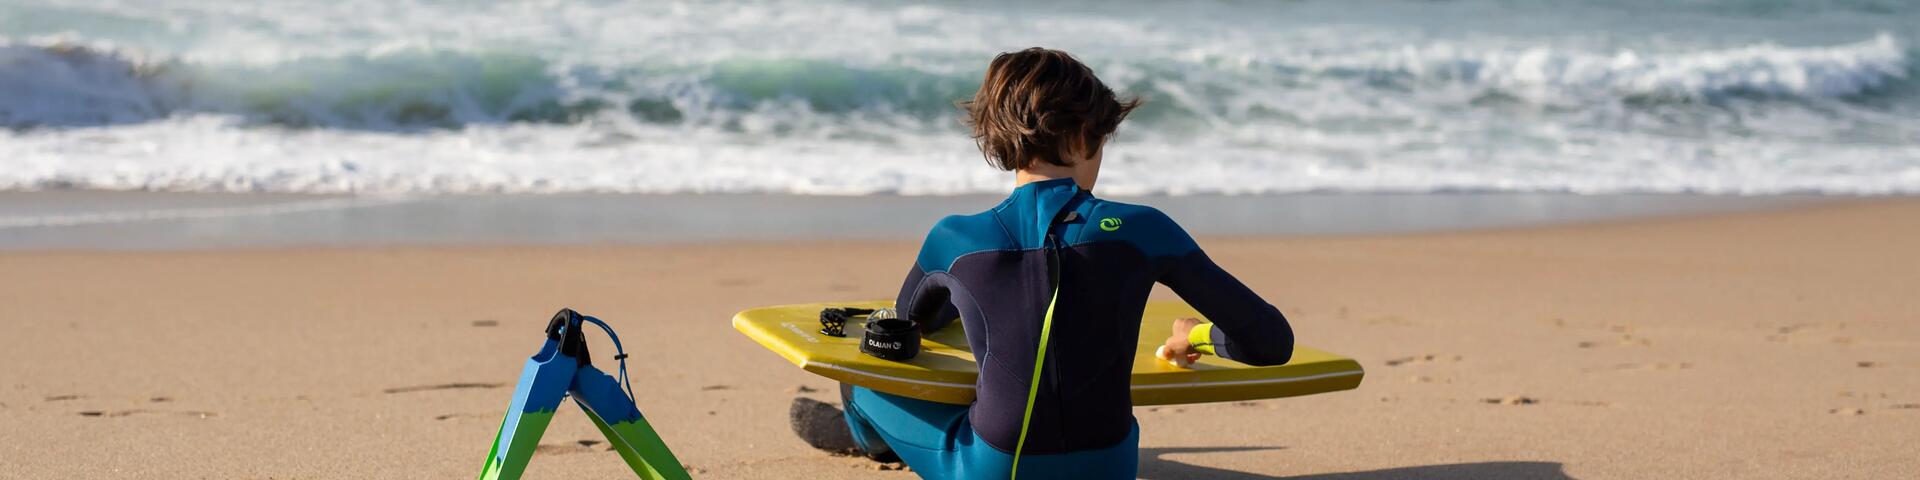 protégez votre aire de jeu de surf